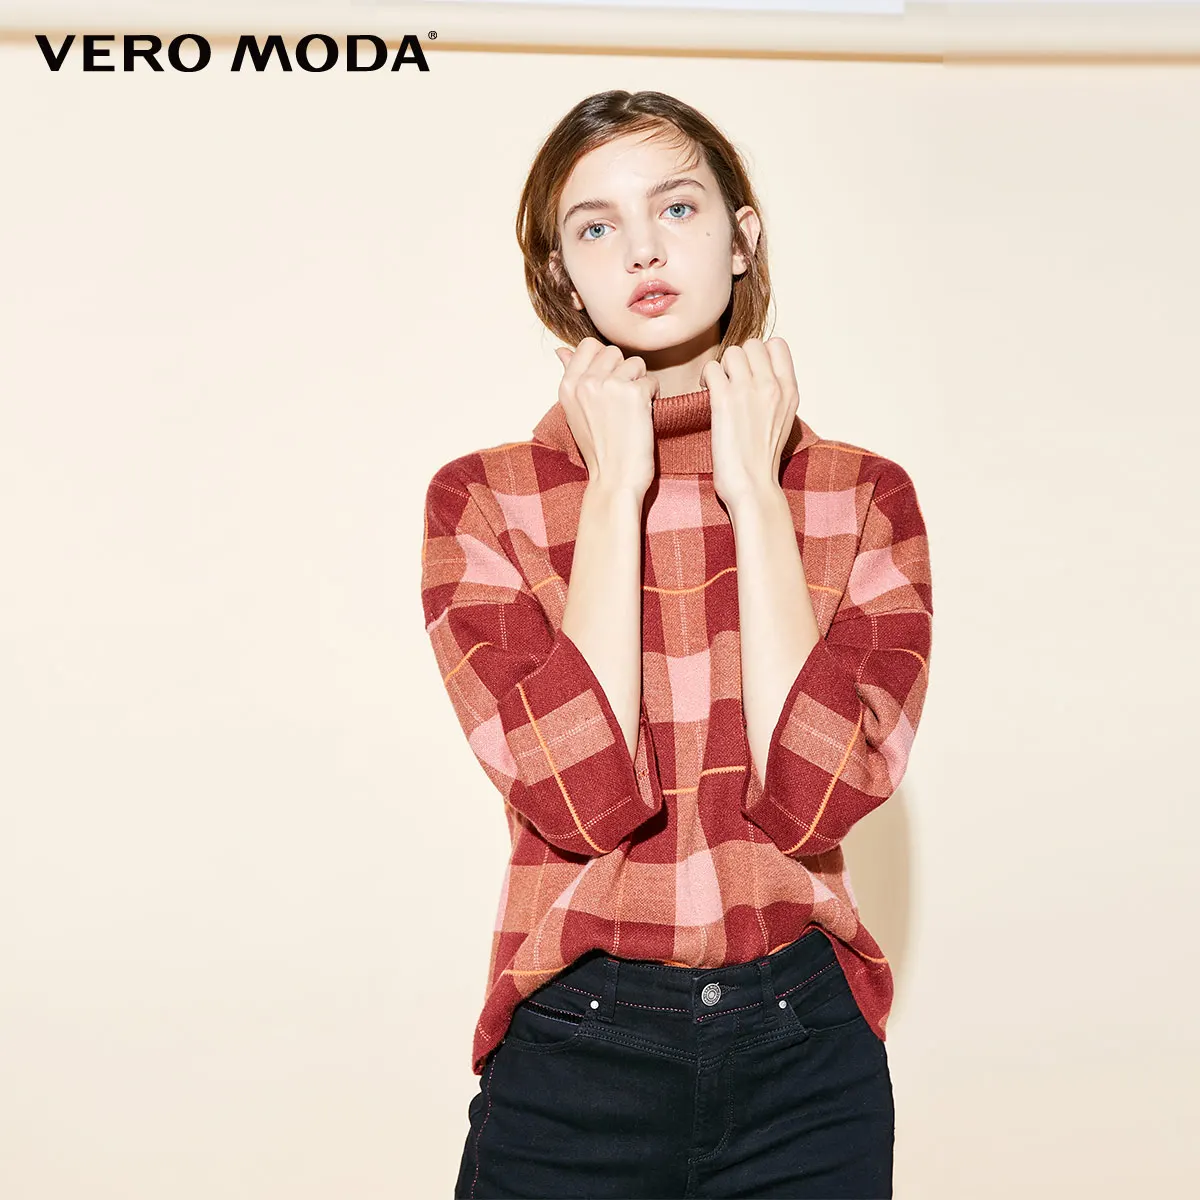 Vero Moda женский клетчатый свитер с высоким воротником и рукавом три четверти | 318313517 - Цвет: Rustic brown mel.